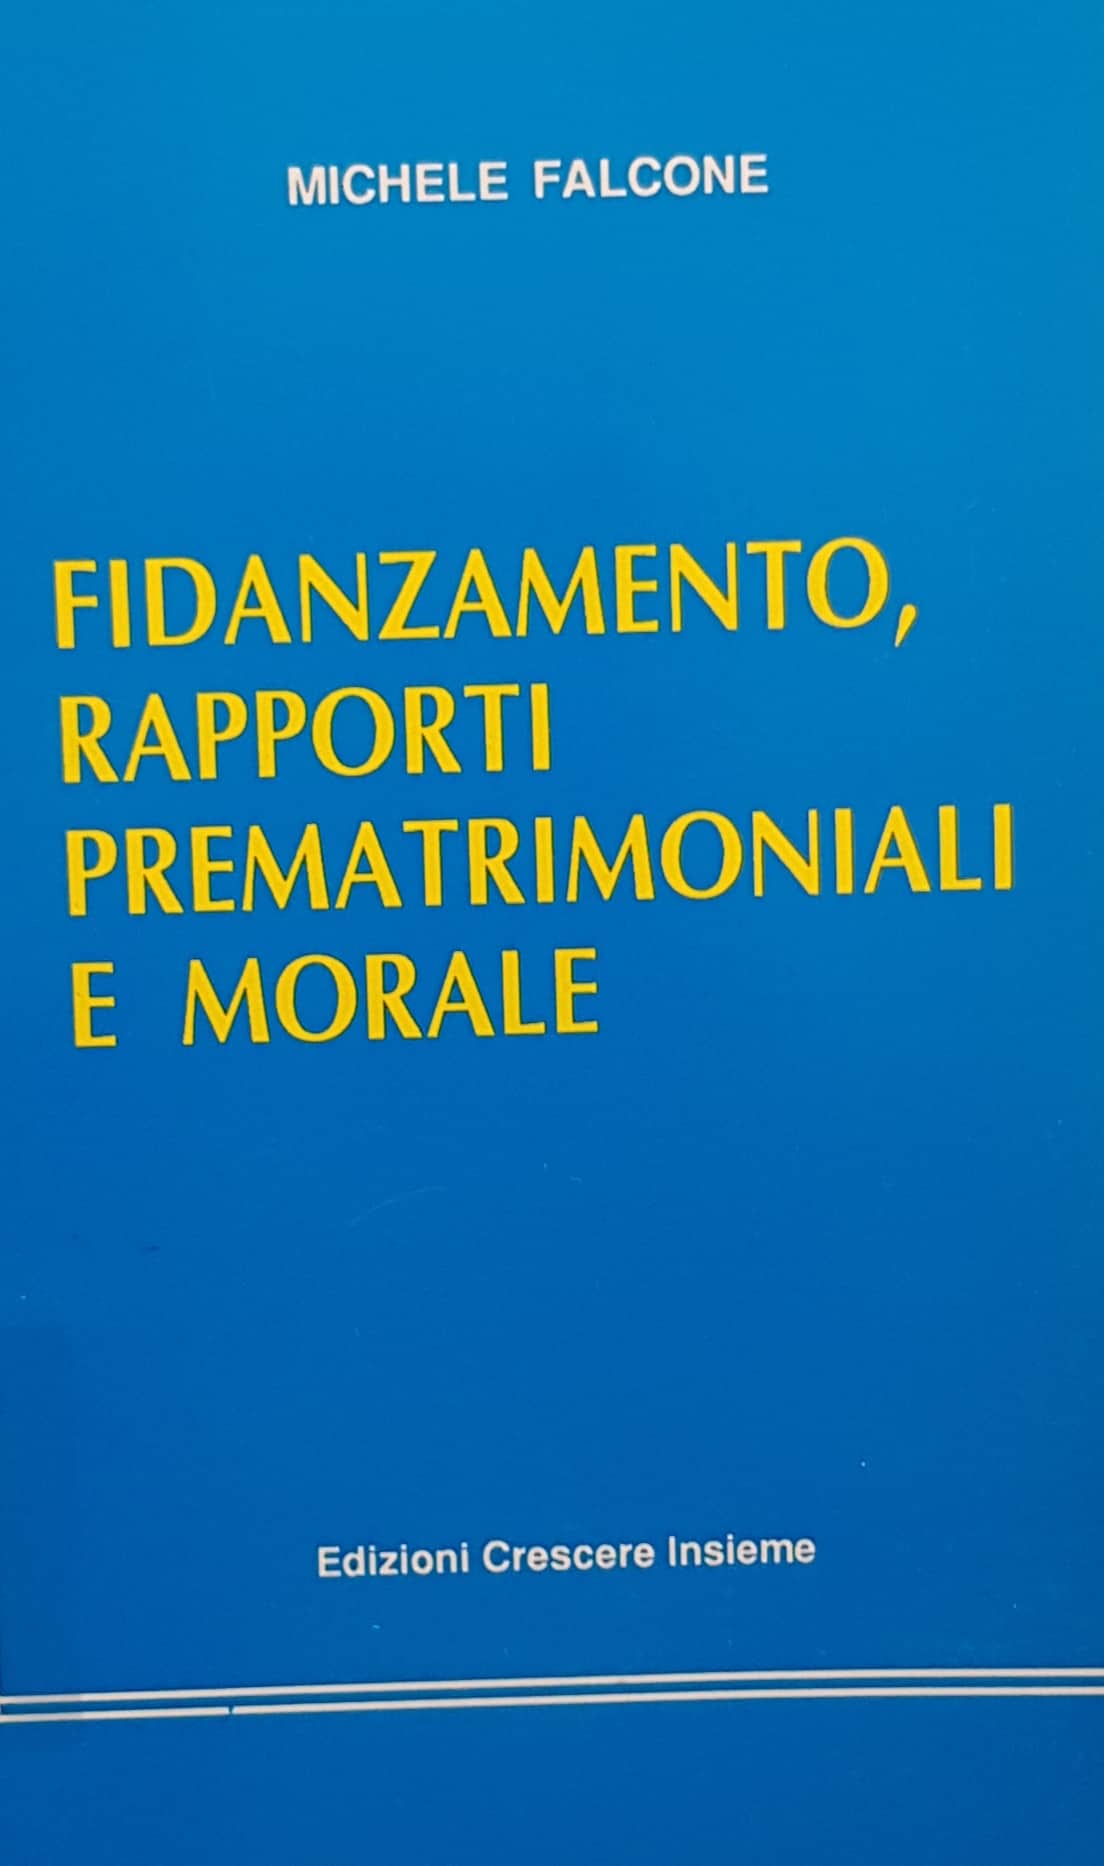 Copertina di Fidanzamento, rapporti prematrimoniali e morale (1991)